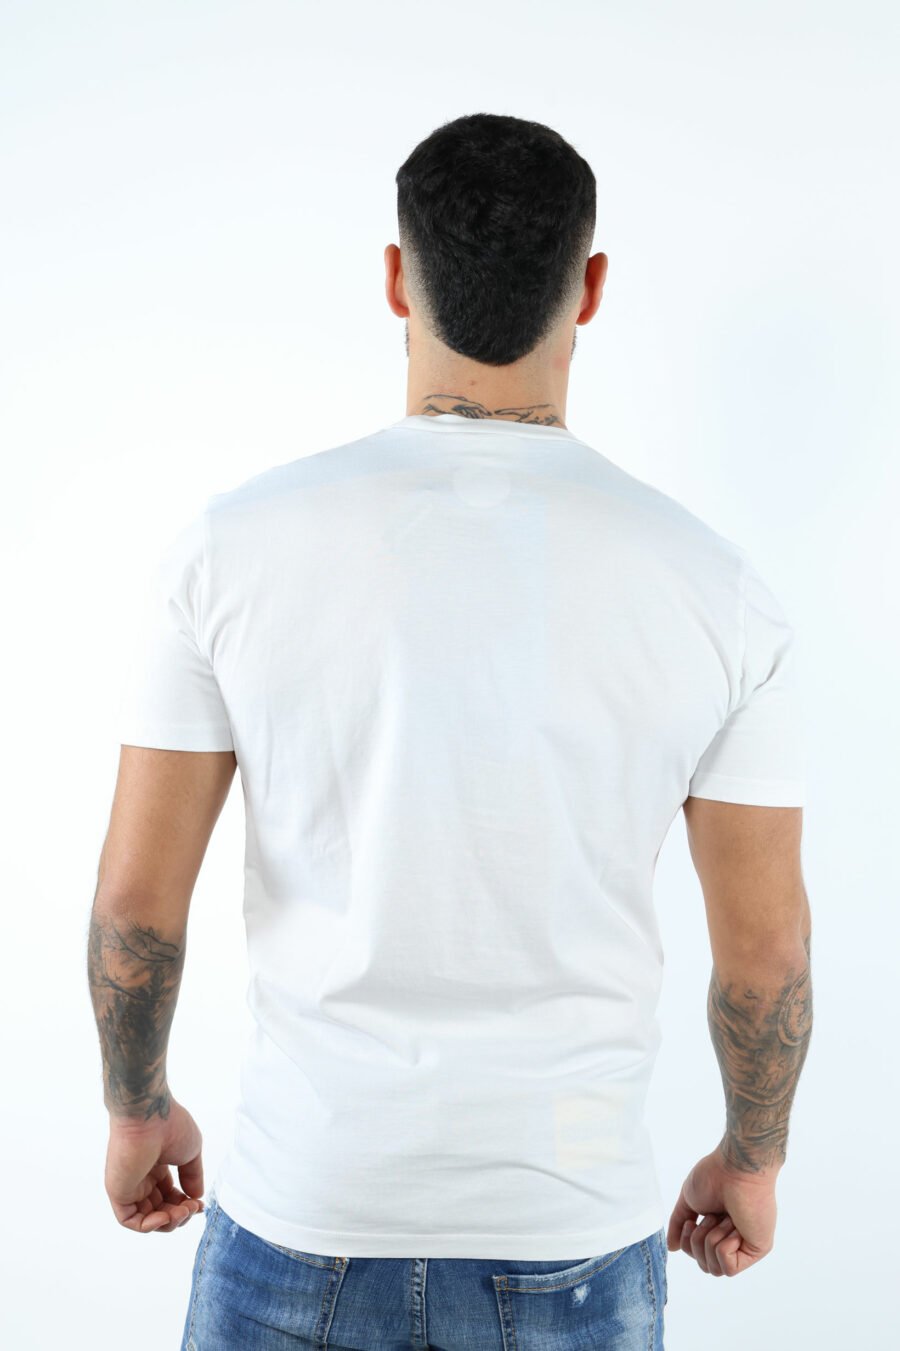 Camiseta blanca con maxilogo "collegue league" - 106630